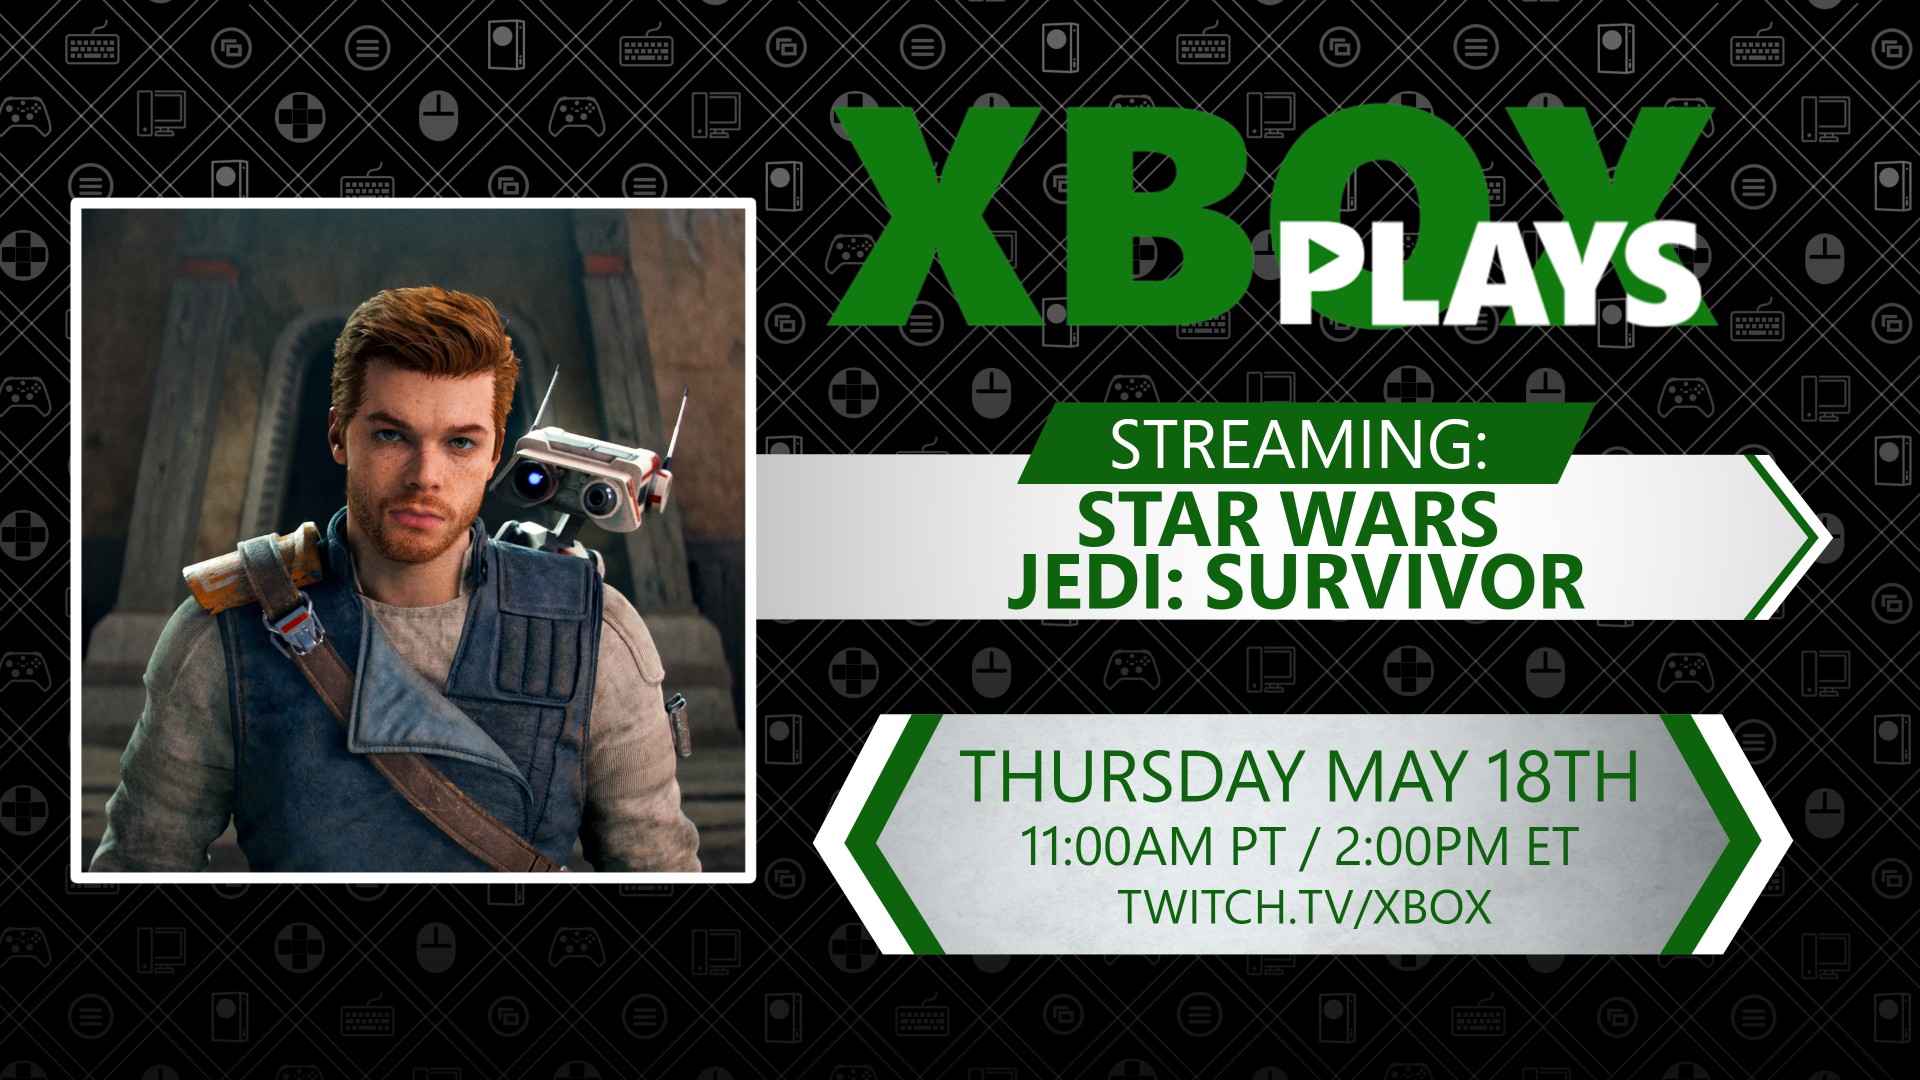 Bild von Cal Kestis, mit Details zum Xbox Plays Star Wars Jedi: Survivor Livestream